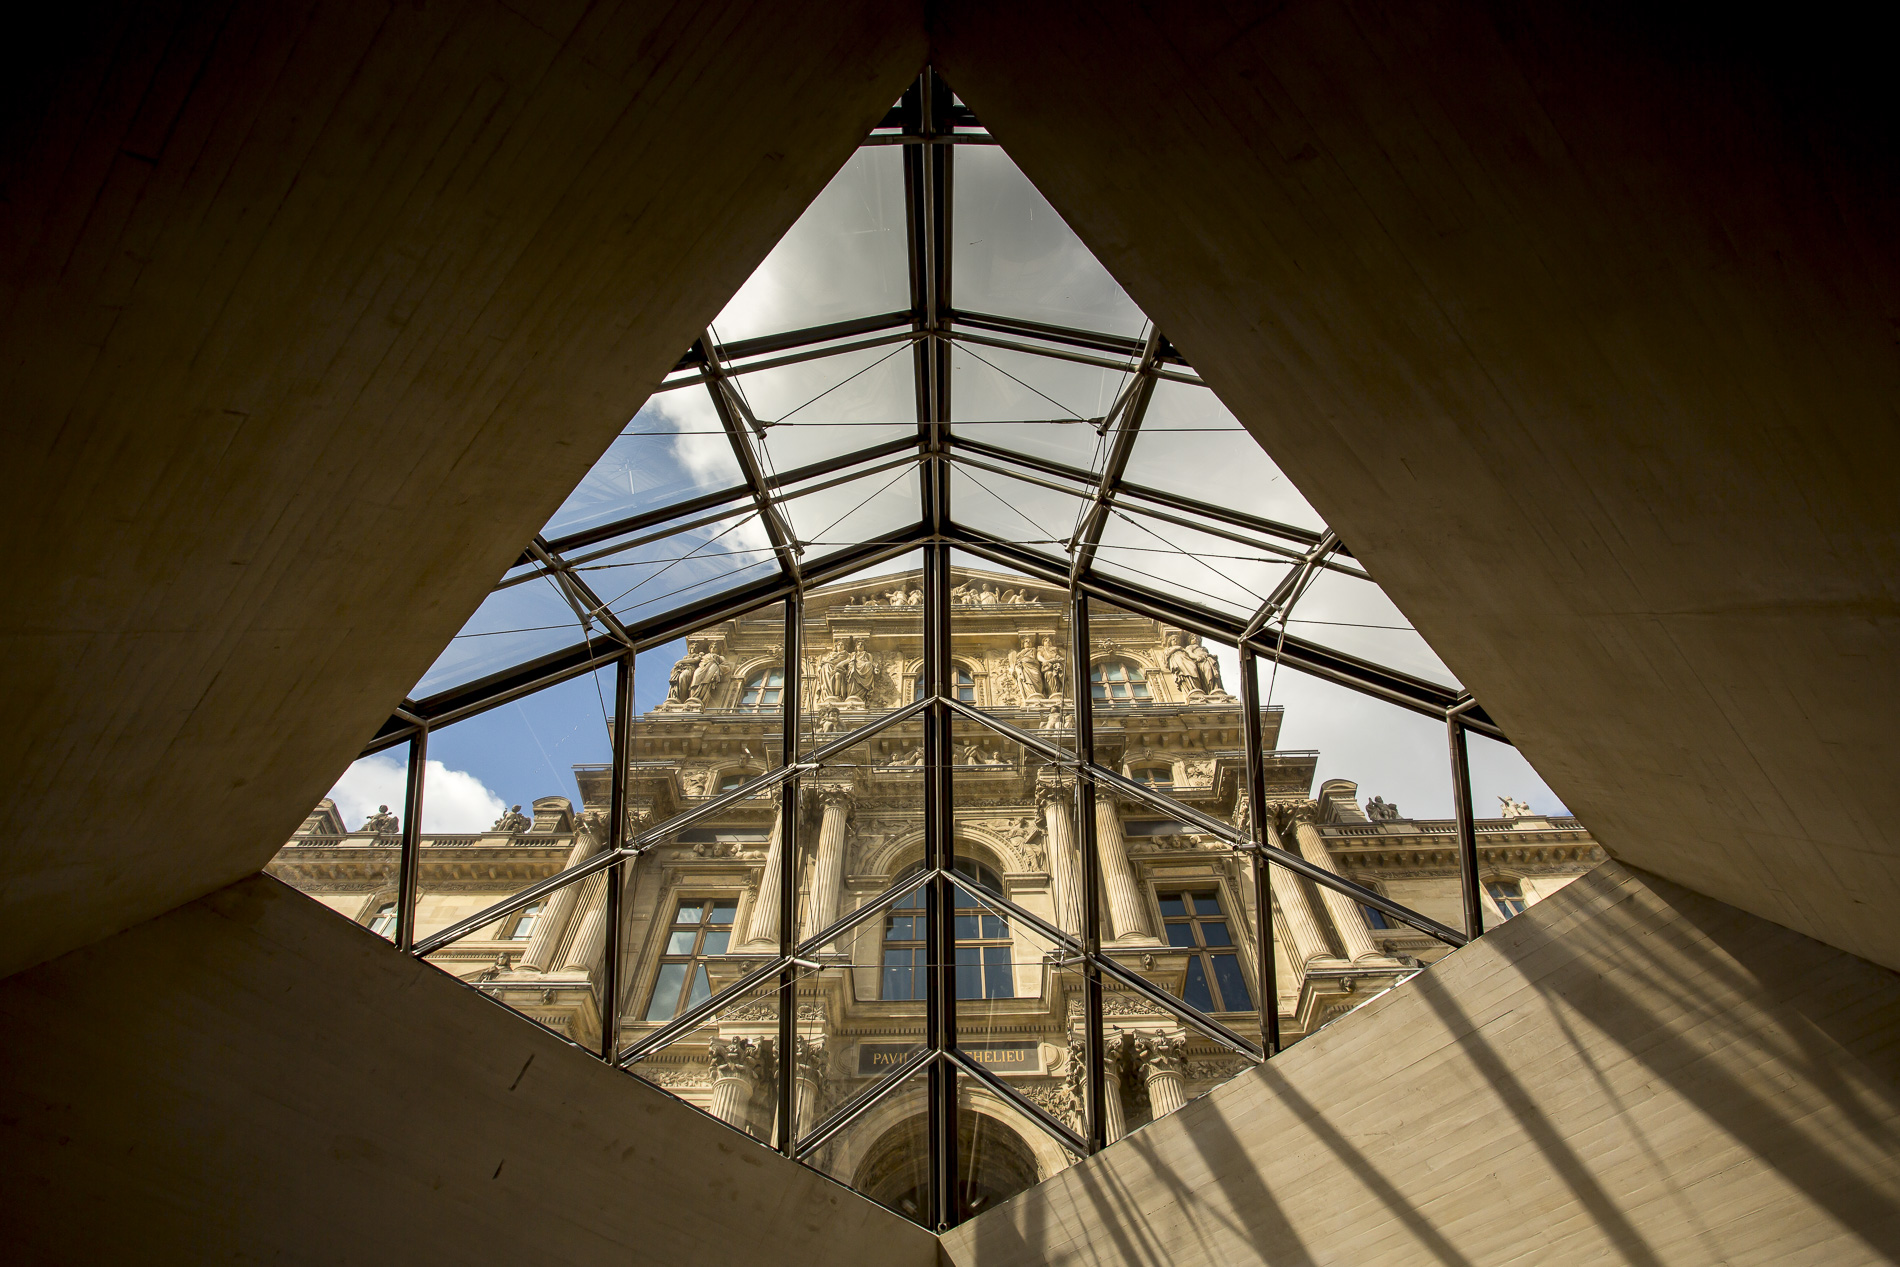 Detalle interior pirámide Museo del Louvre - París